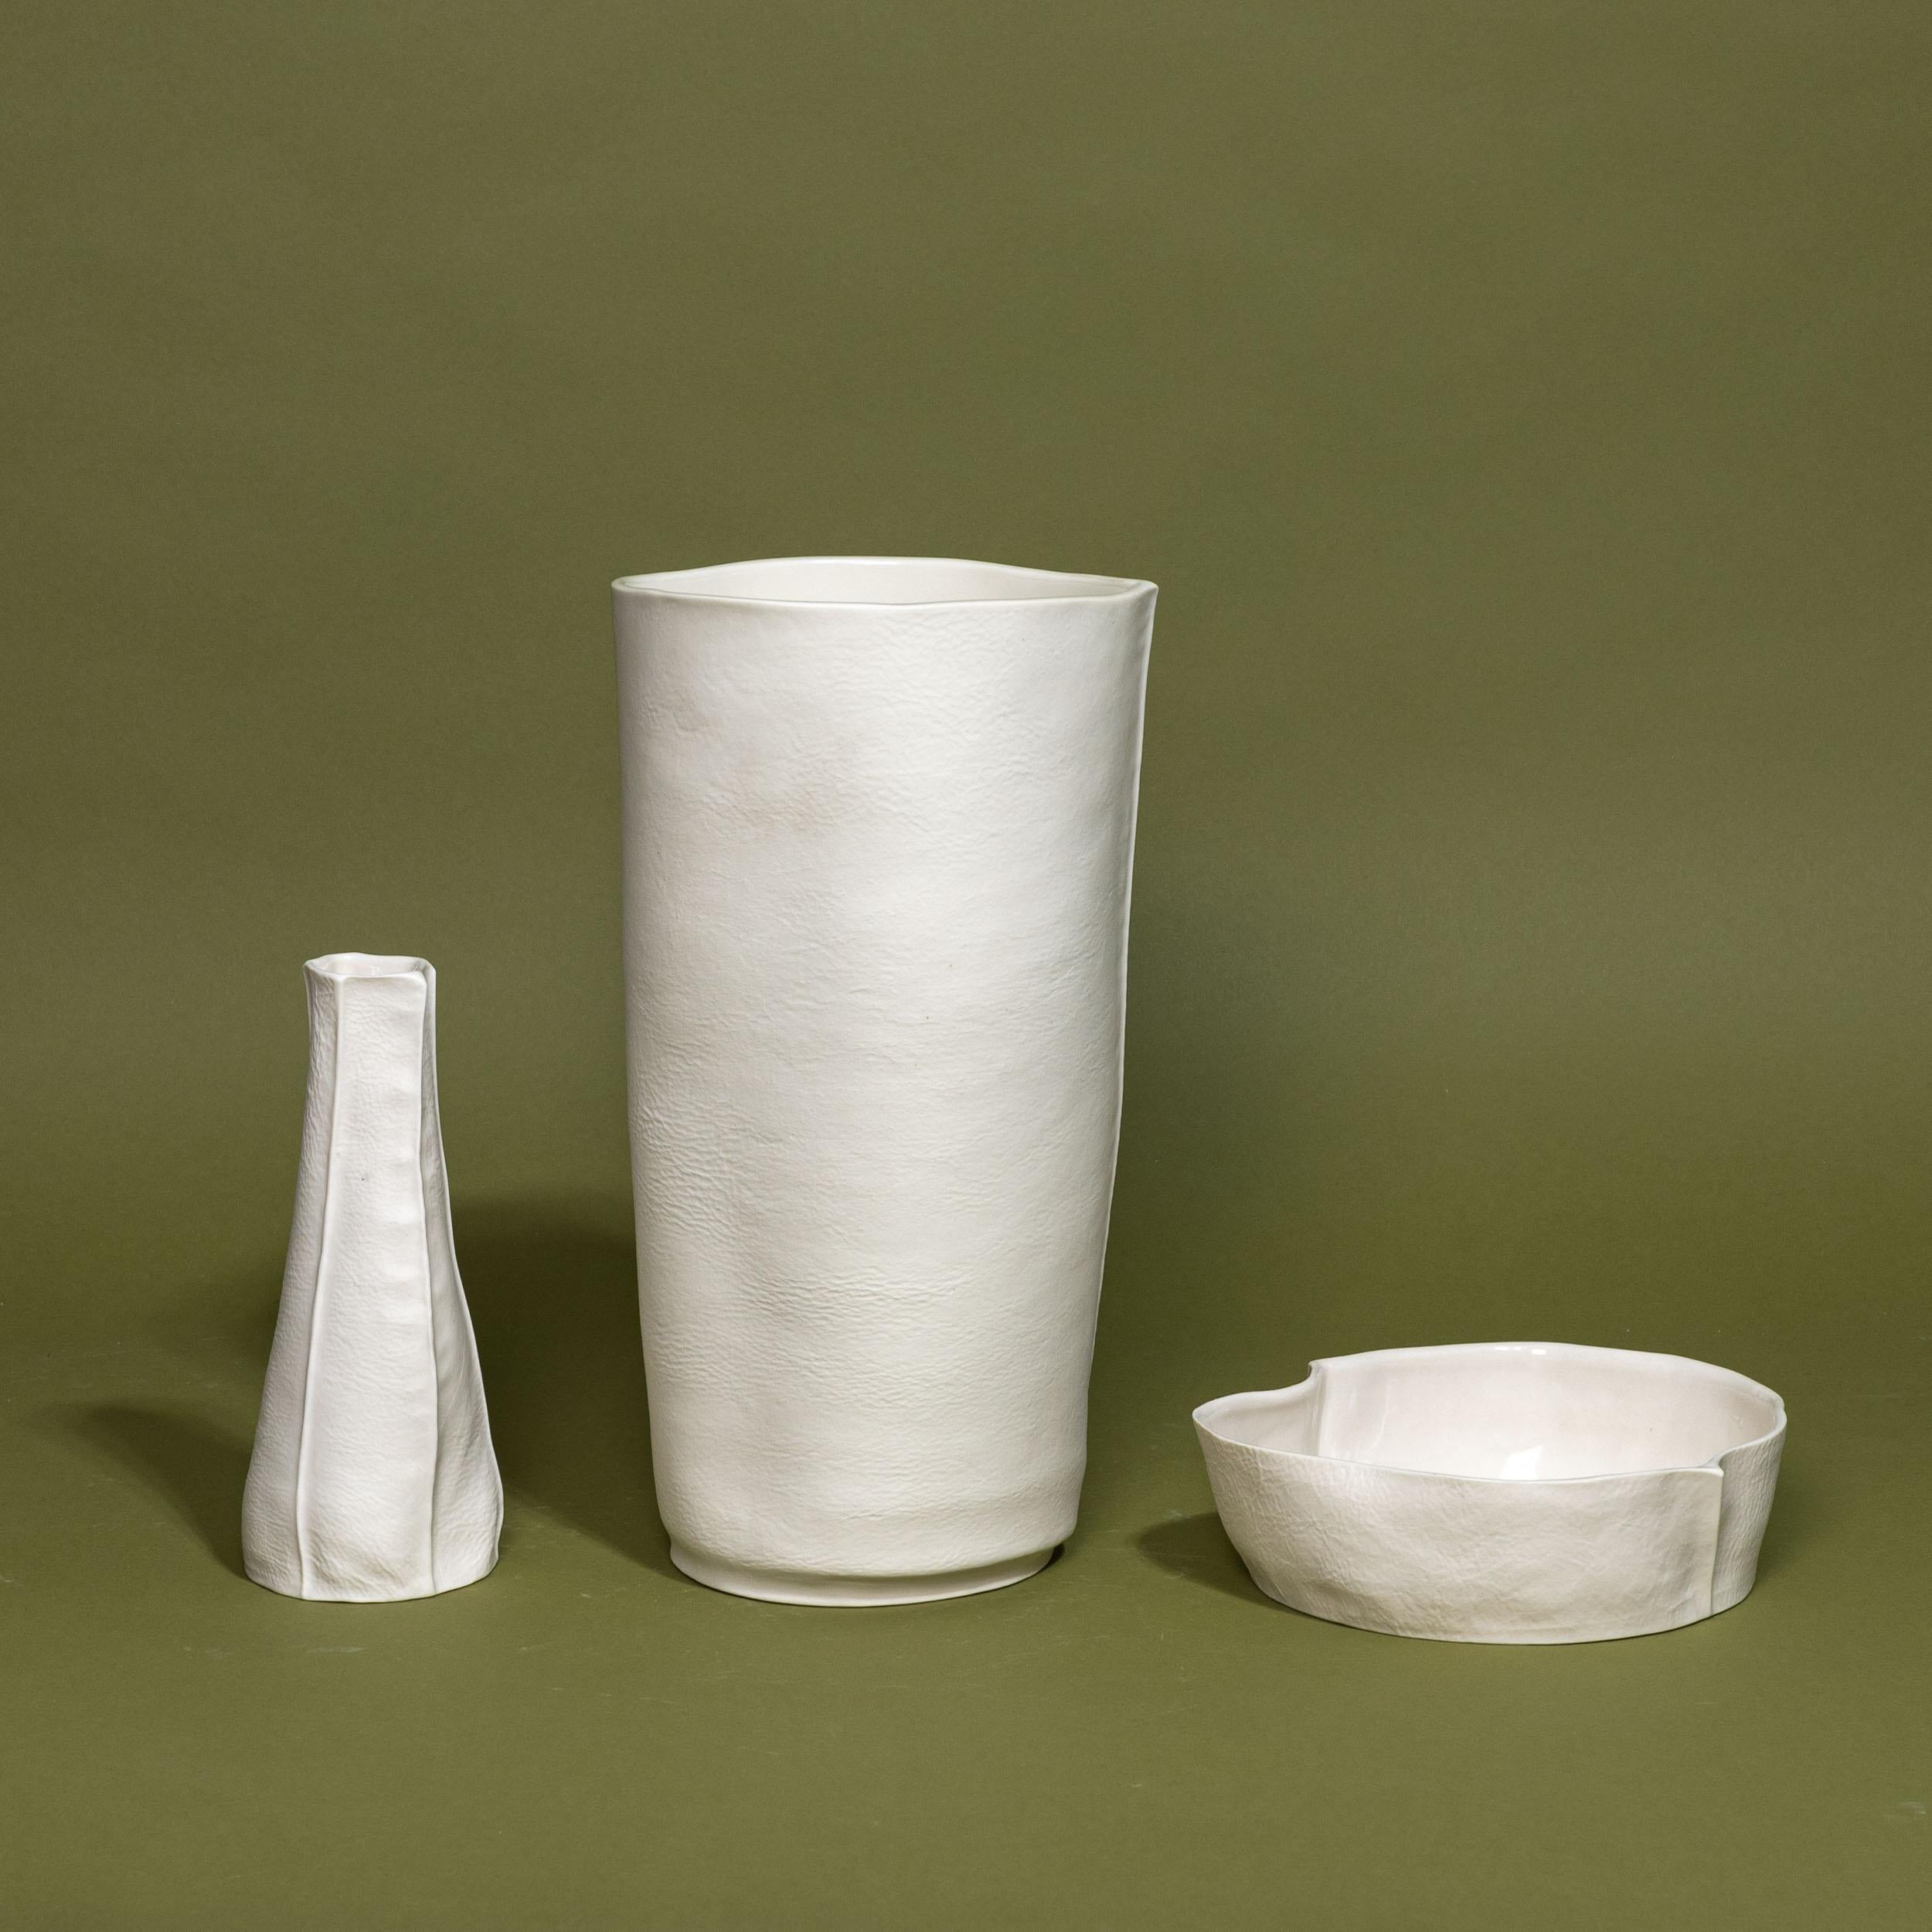 Groupement d'objets uniques de la série Kawa, fabriqués à la main par Luft Tanaka Studio en coulant de la porcelaine dans des moules en cuir cousus. 

Vendu comme un ensemble de 3 articles : 2 vases et une coupelle. 

En raison du processus de